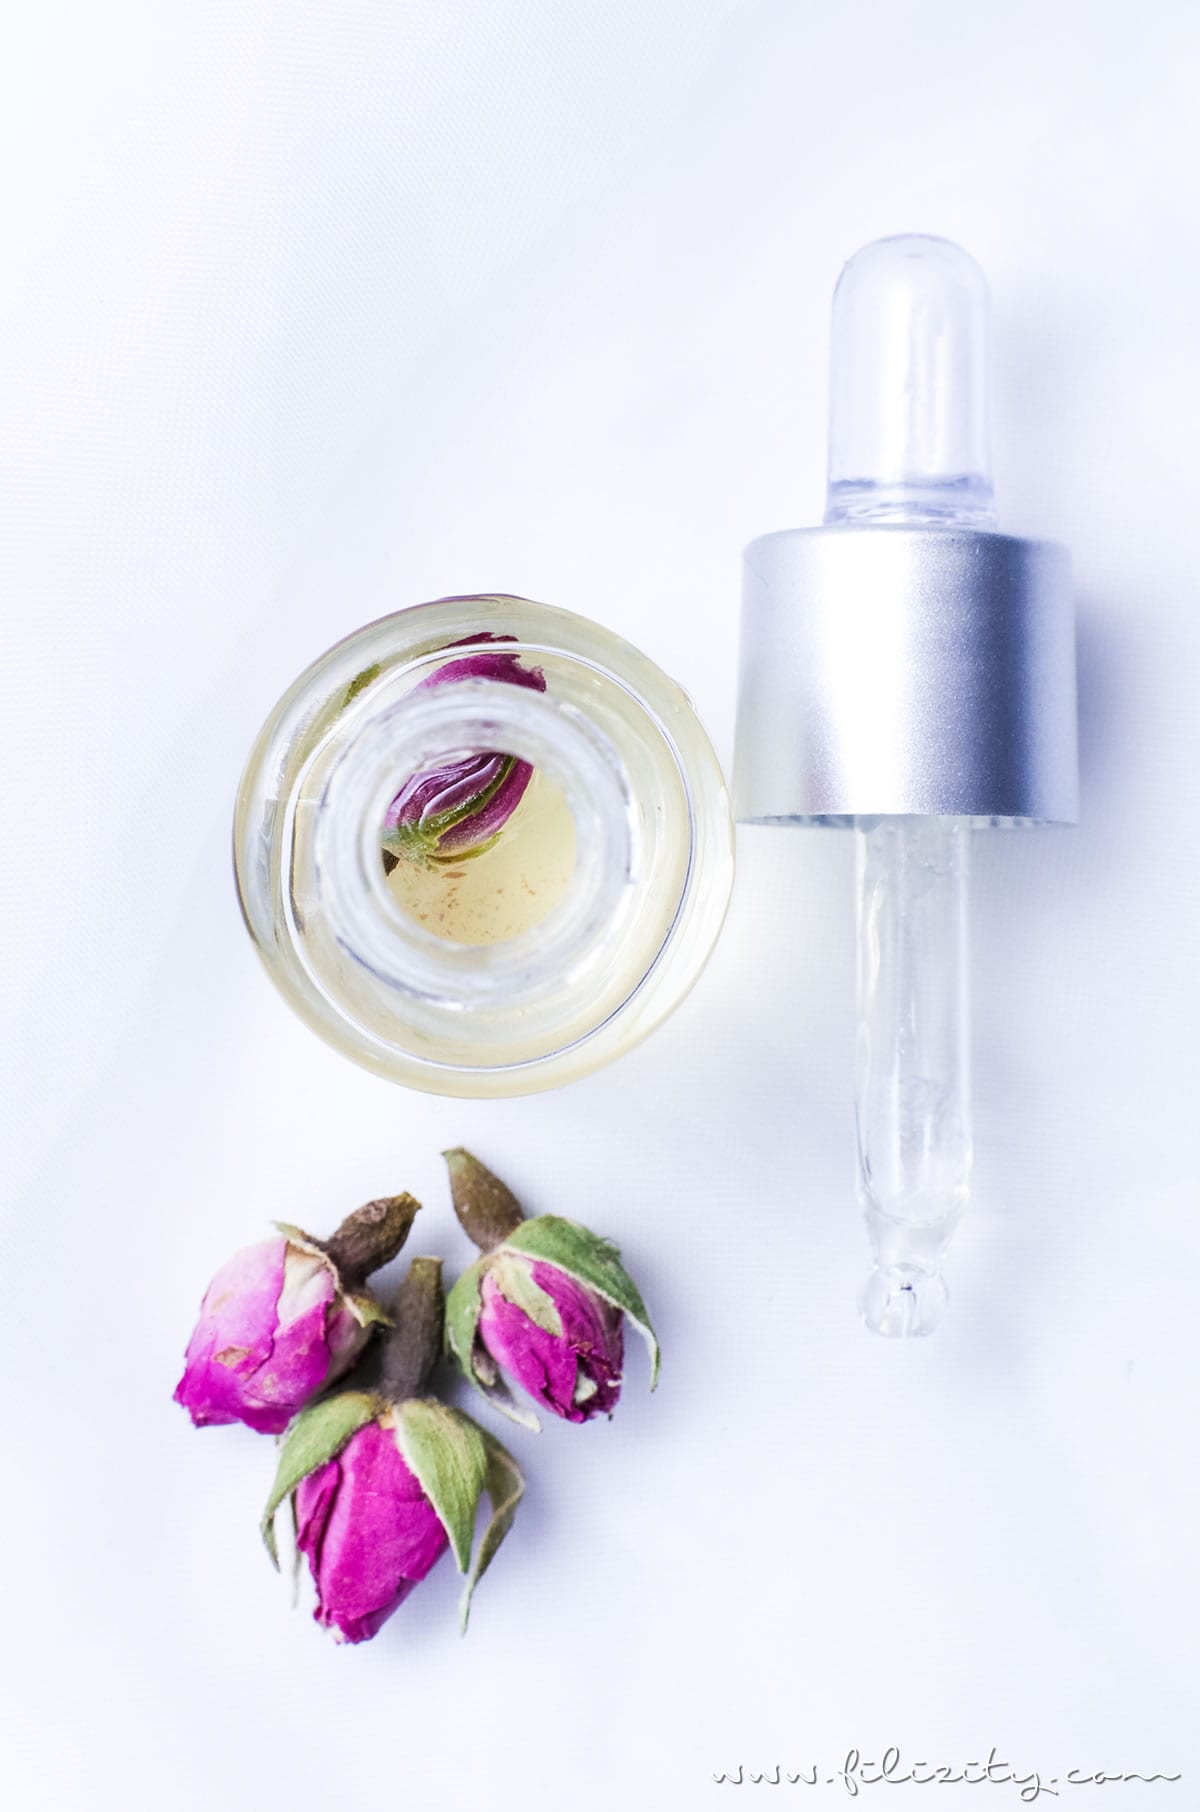 Rosenöl selber machen - DIY Hautpflege & Geschenkidee für Valentinstag | Naturkosmetik selber machen | Filizity.com | Beauty- & DIY-Blog aus dem Rheinland #valentinstag #geschenkidee #muttertag